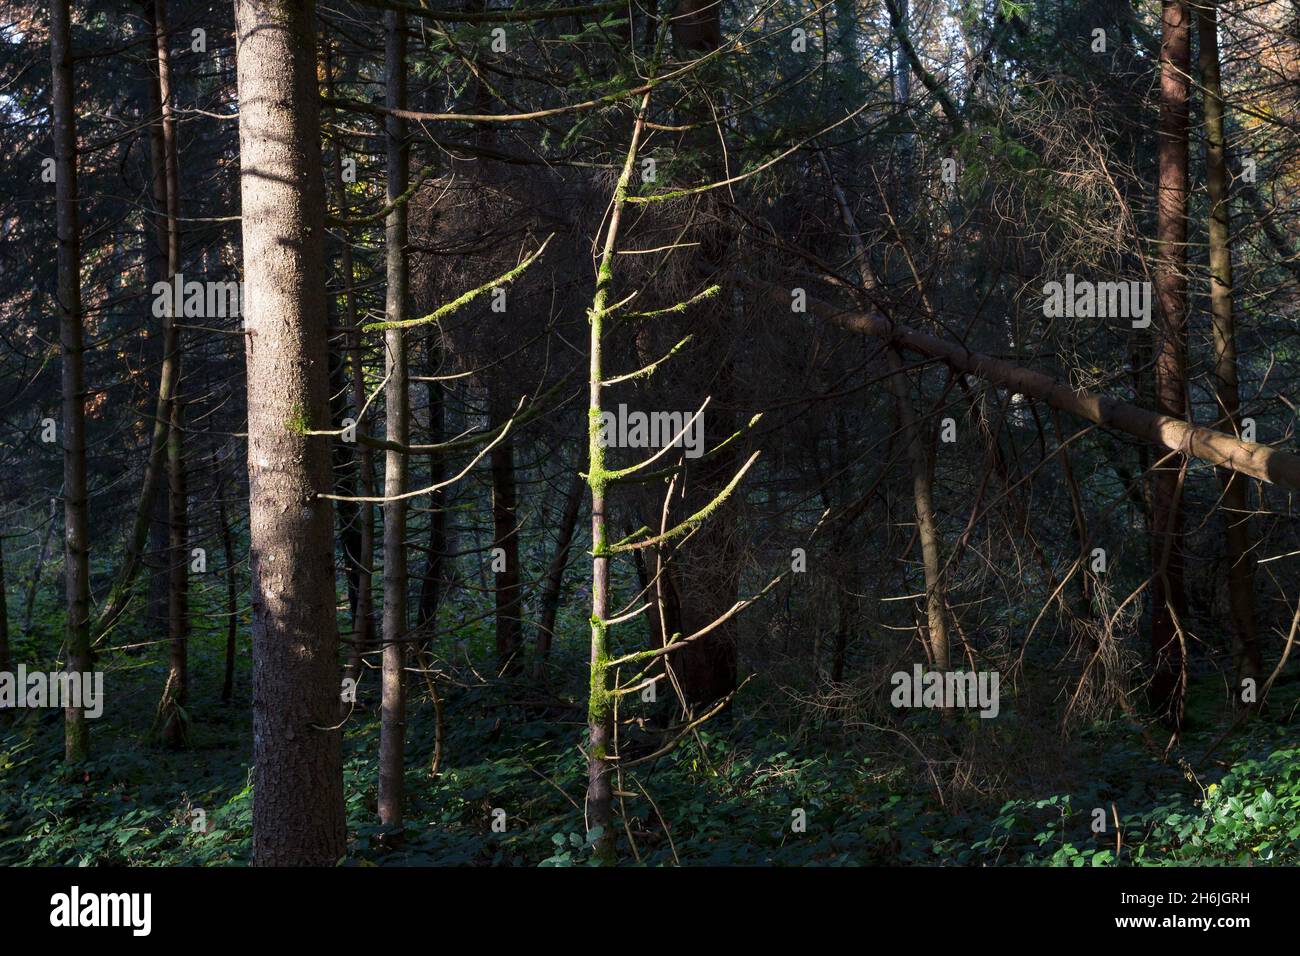 Nadelbäume mit abgestorbenen Ästen in einem deutschen Wald im Licht der Sonne. Dunkles Naturfoto als Symbol für den Waldverbruch und den Klimawandel Stockfoto